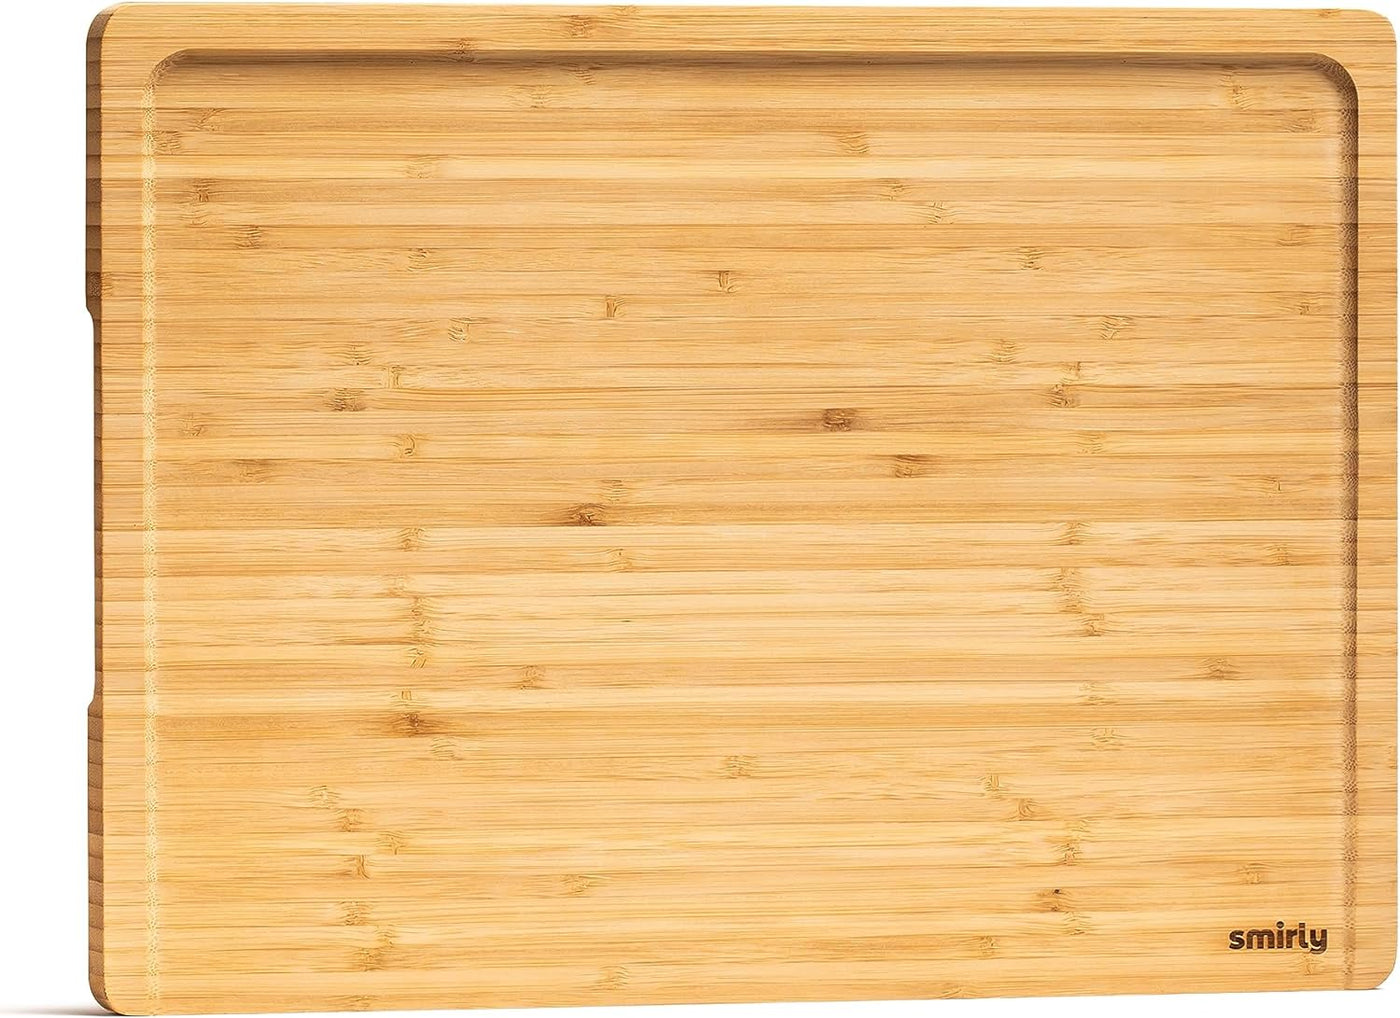 Bambu Classic Cutting & Serving Board. Medium. 12 x 8